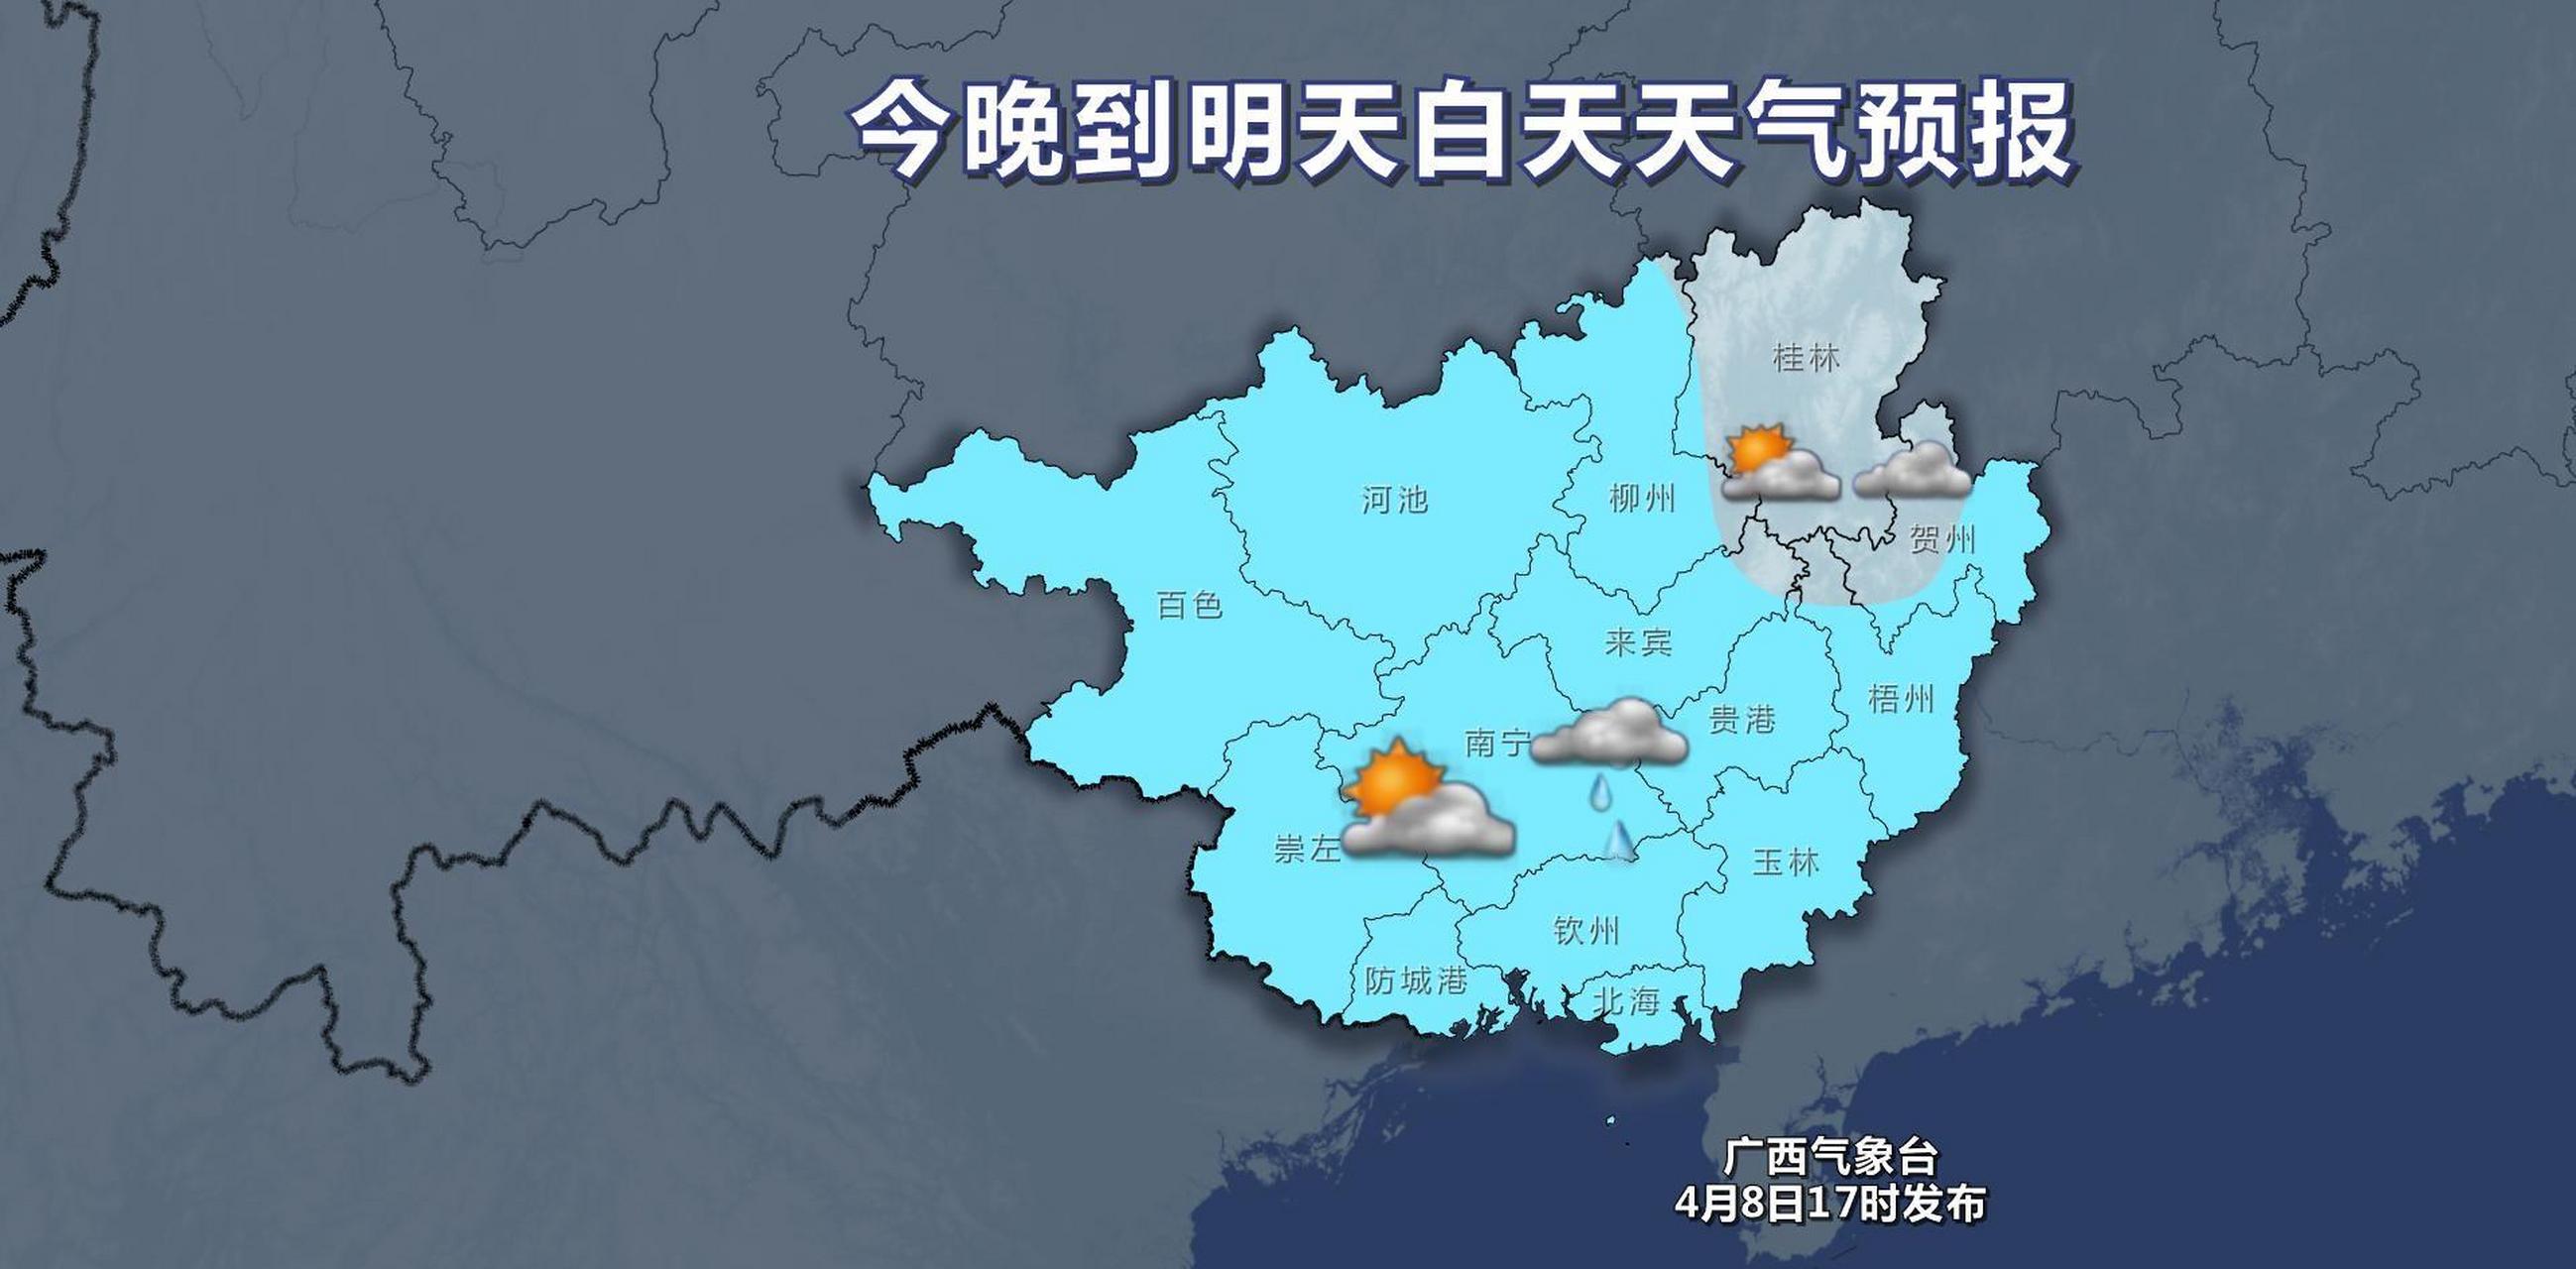 桂林一周天气图片